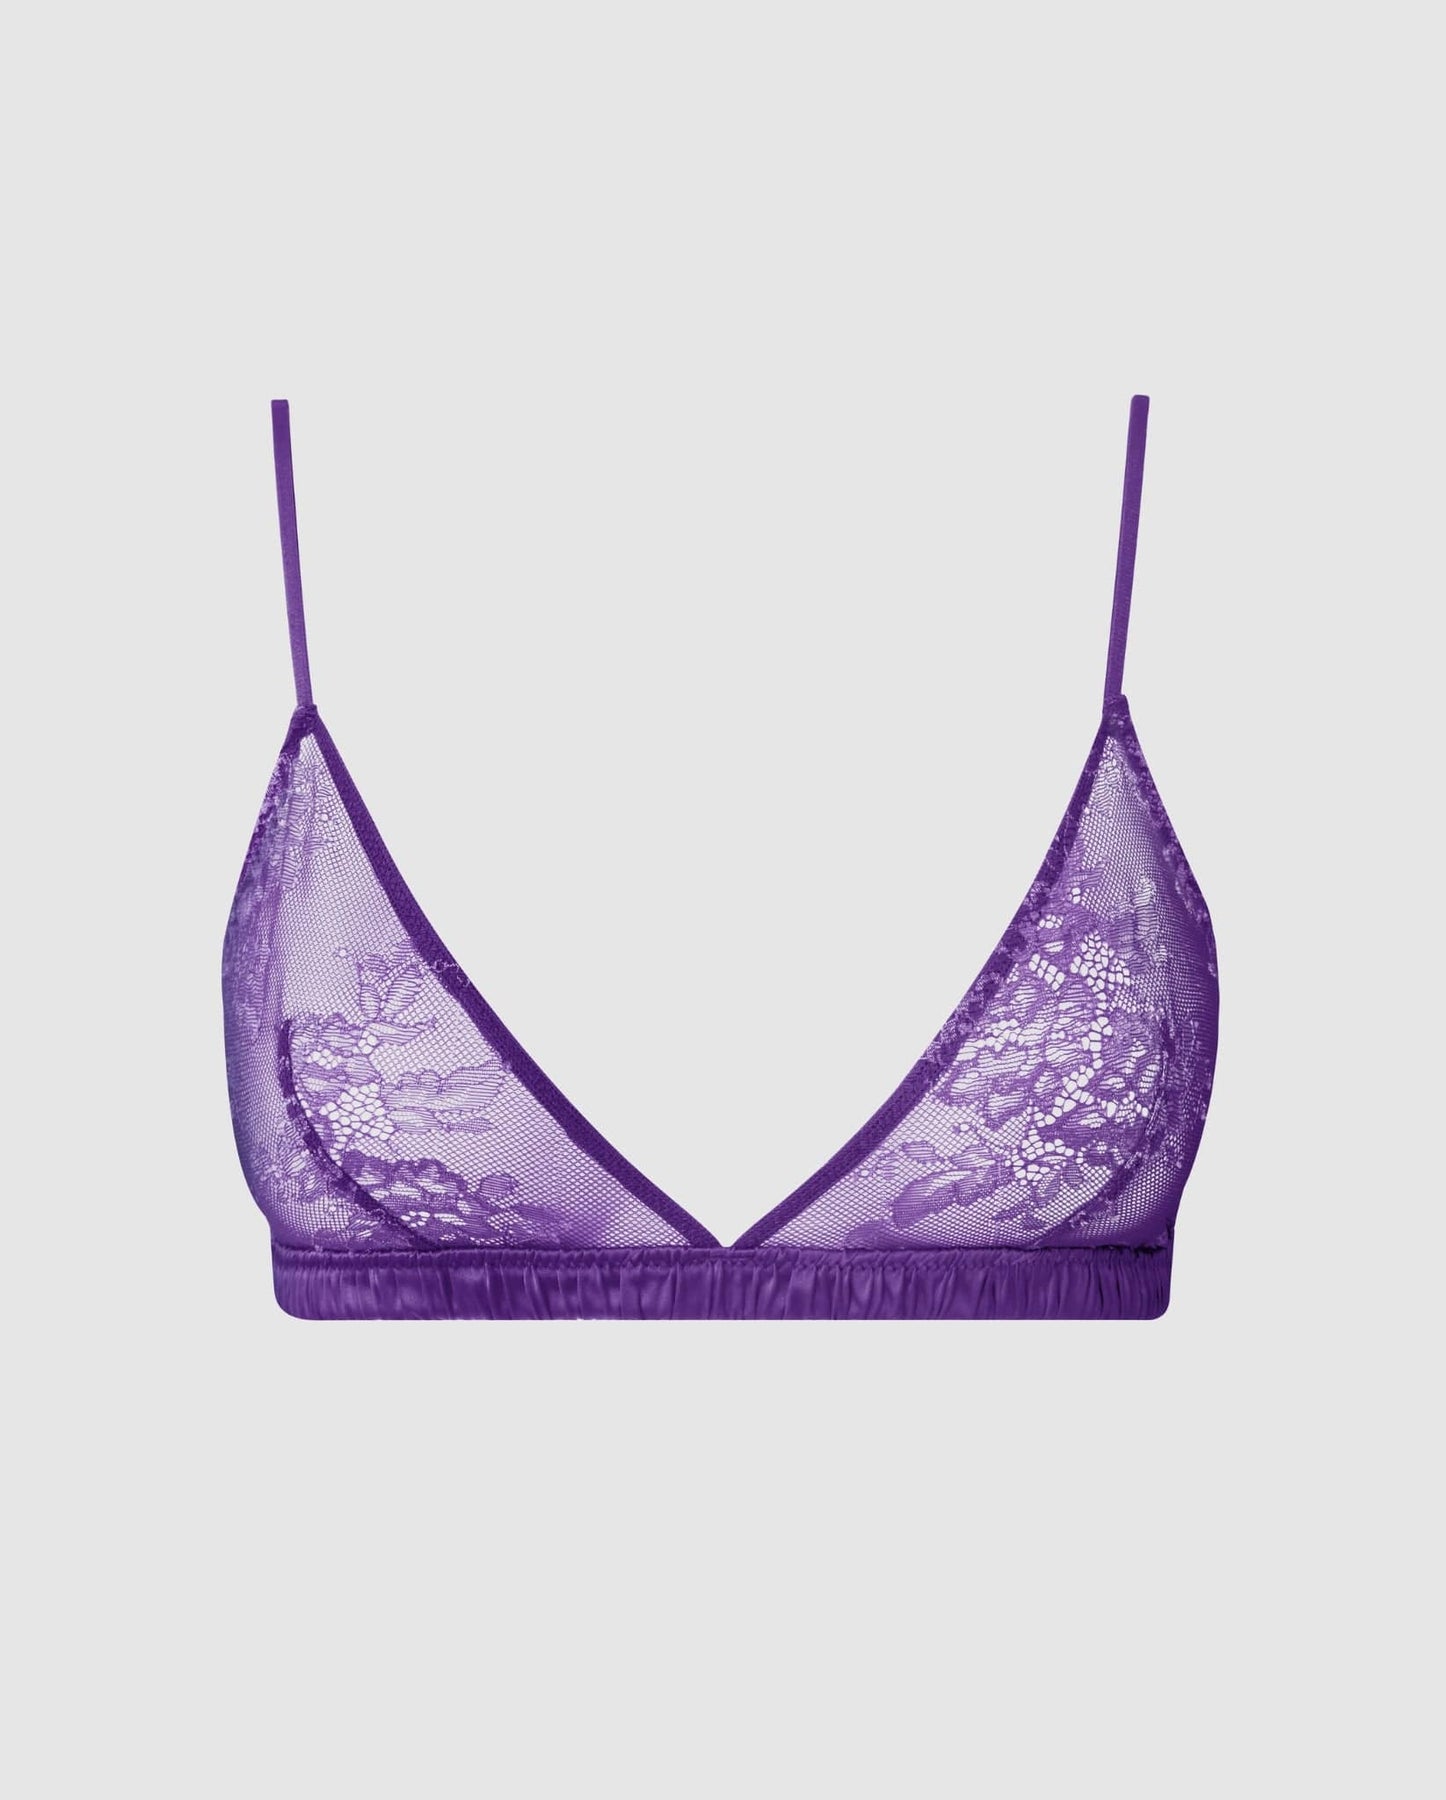 Sexy Purple Bralette - Lace Bralette - Triangle Top Bralette - Lulus